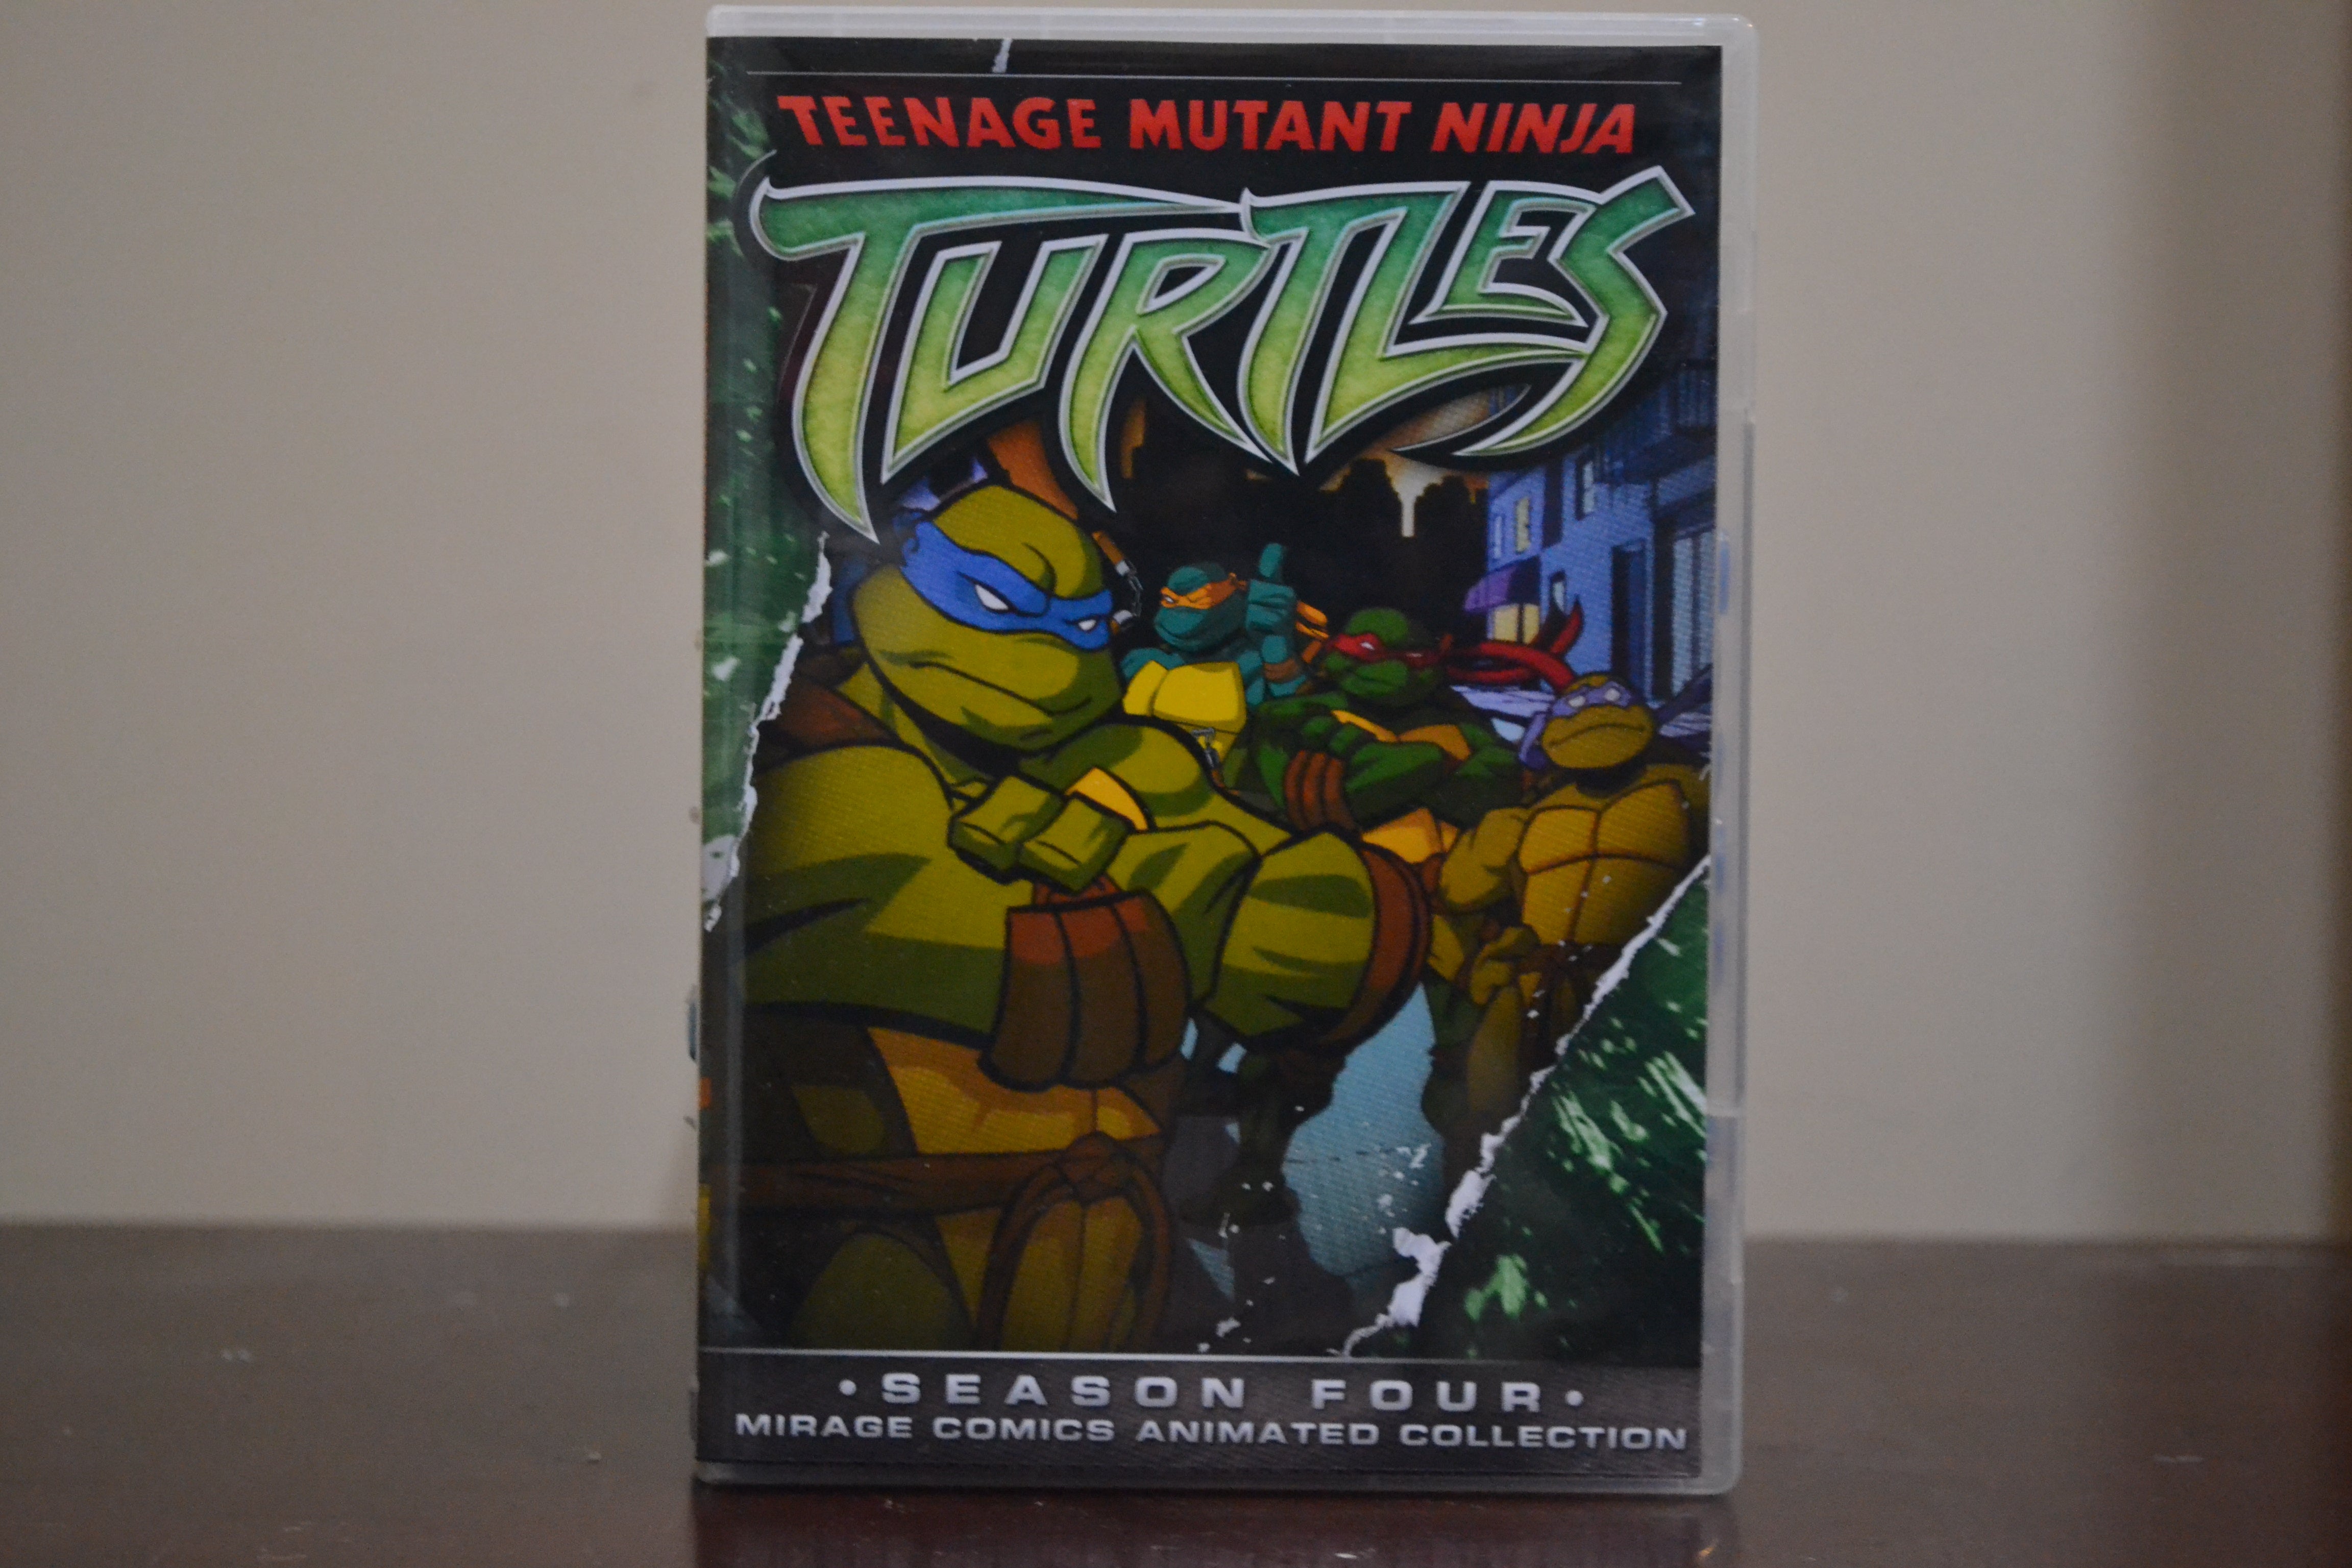 Teenage Mutant Ninja Turtles Season 4 DvD Set’s